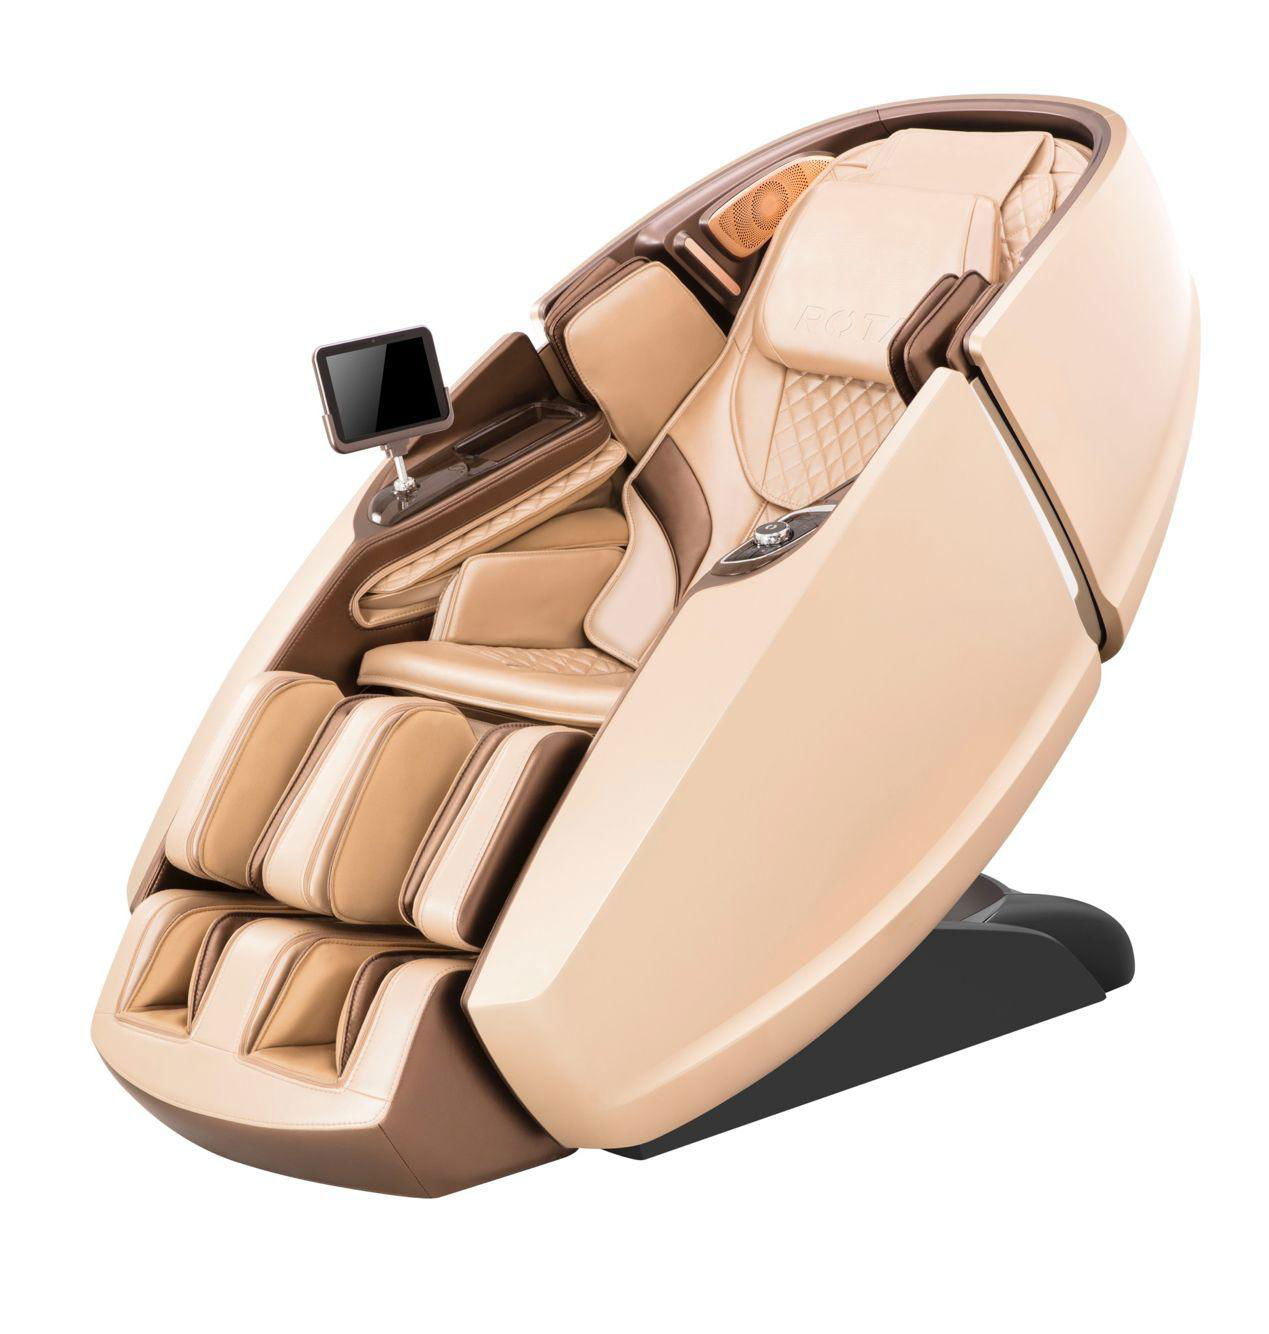 Super Deluxe 4D Zero Gravity Recliner Foot Massage Chair 2